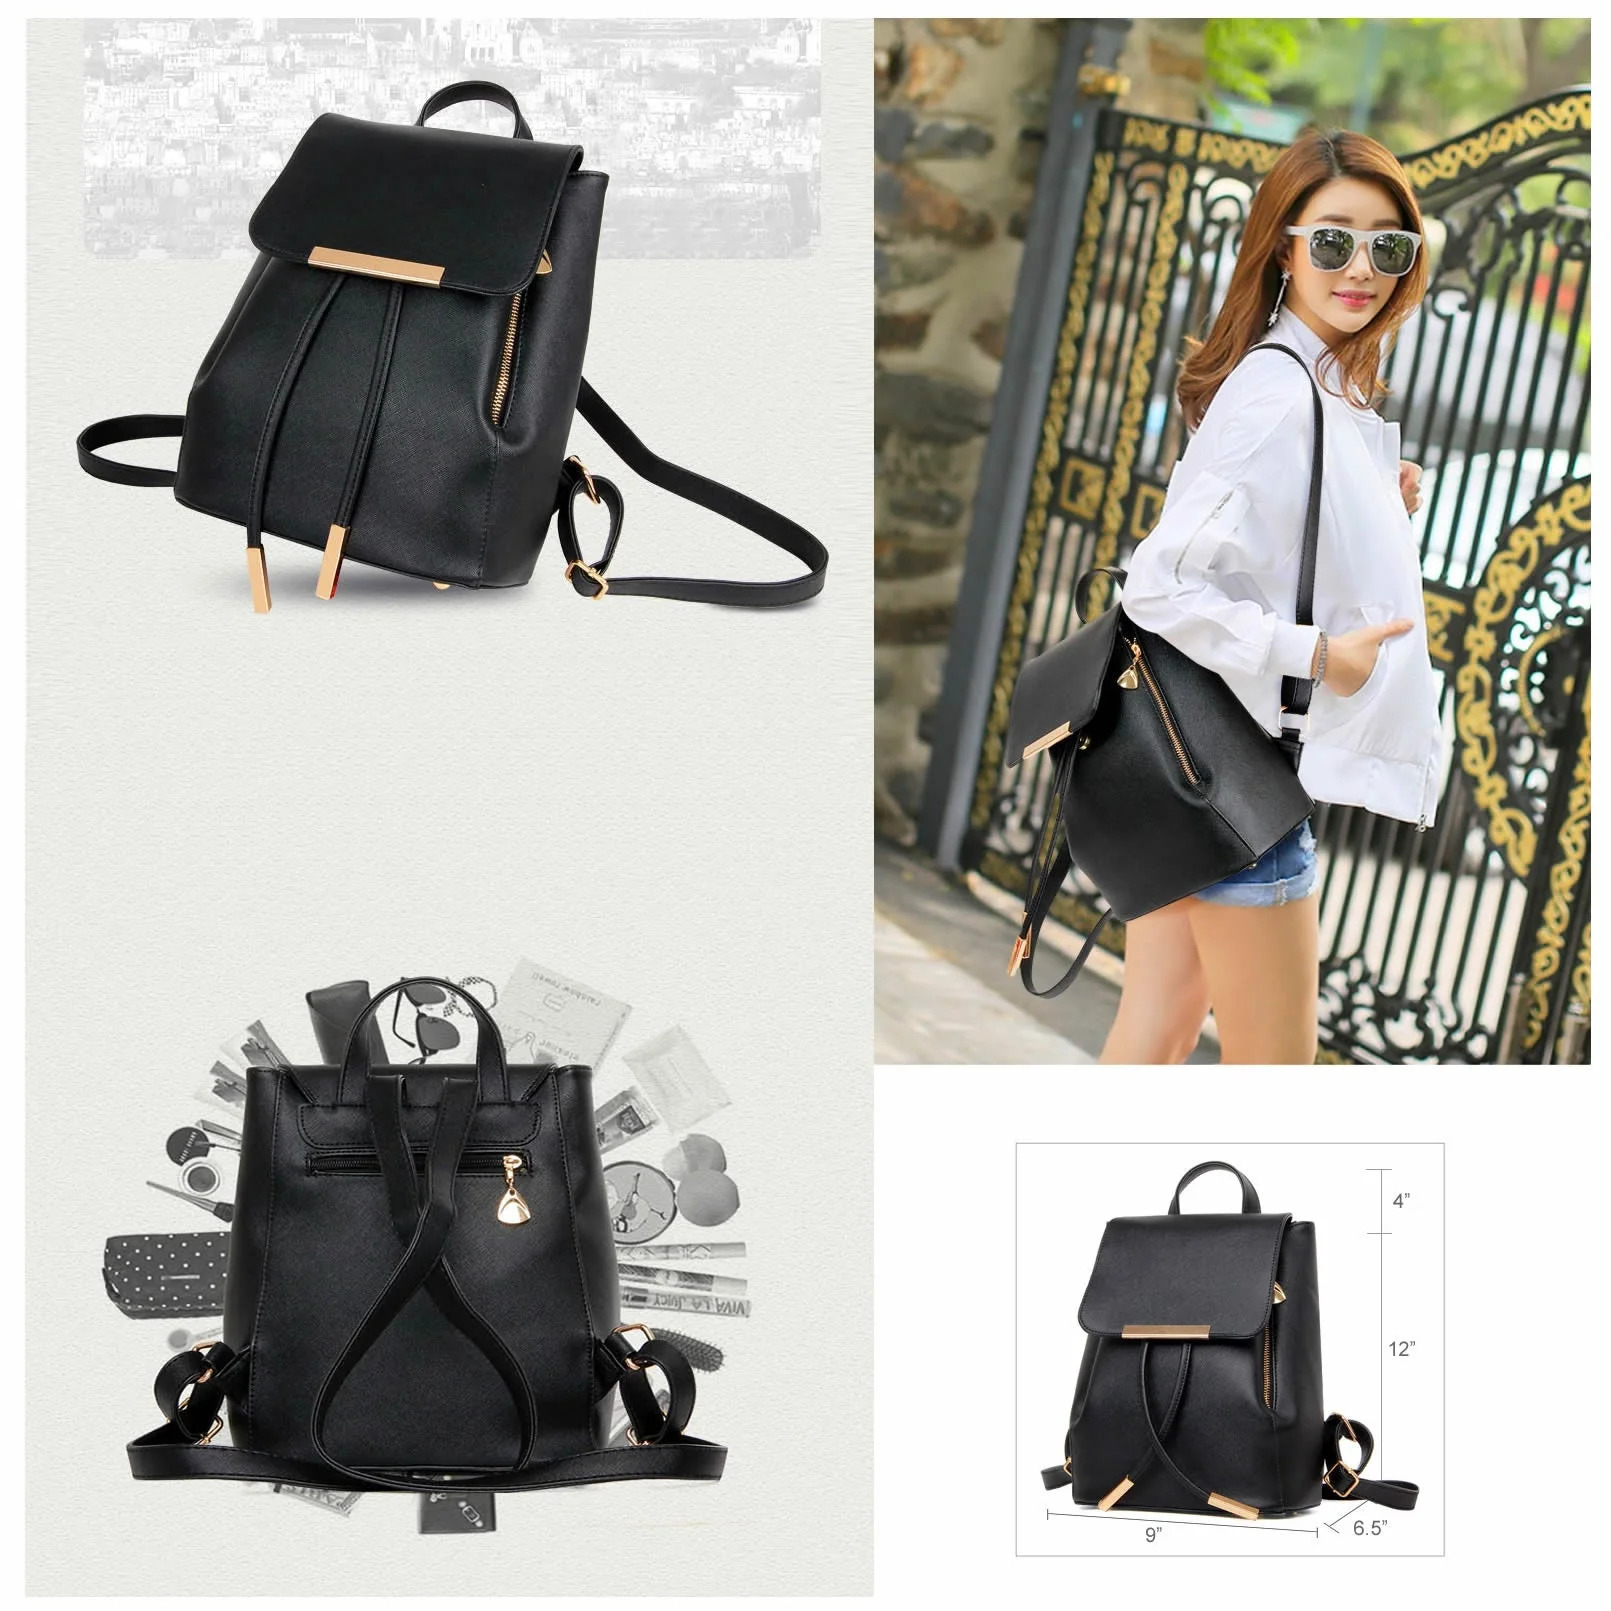 Katalina Classic Handbag Convertible To Backpack - image 5 of 5